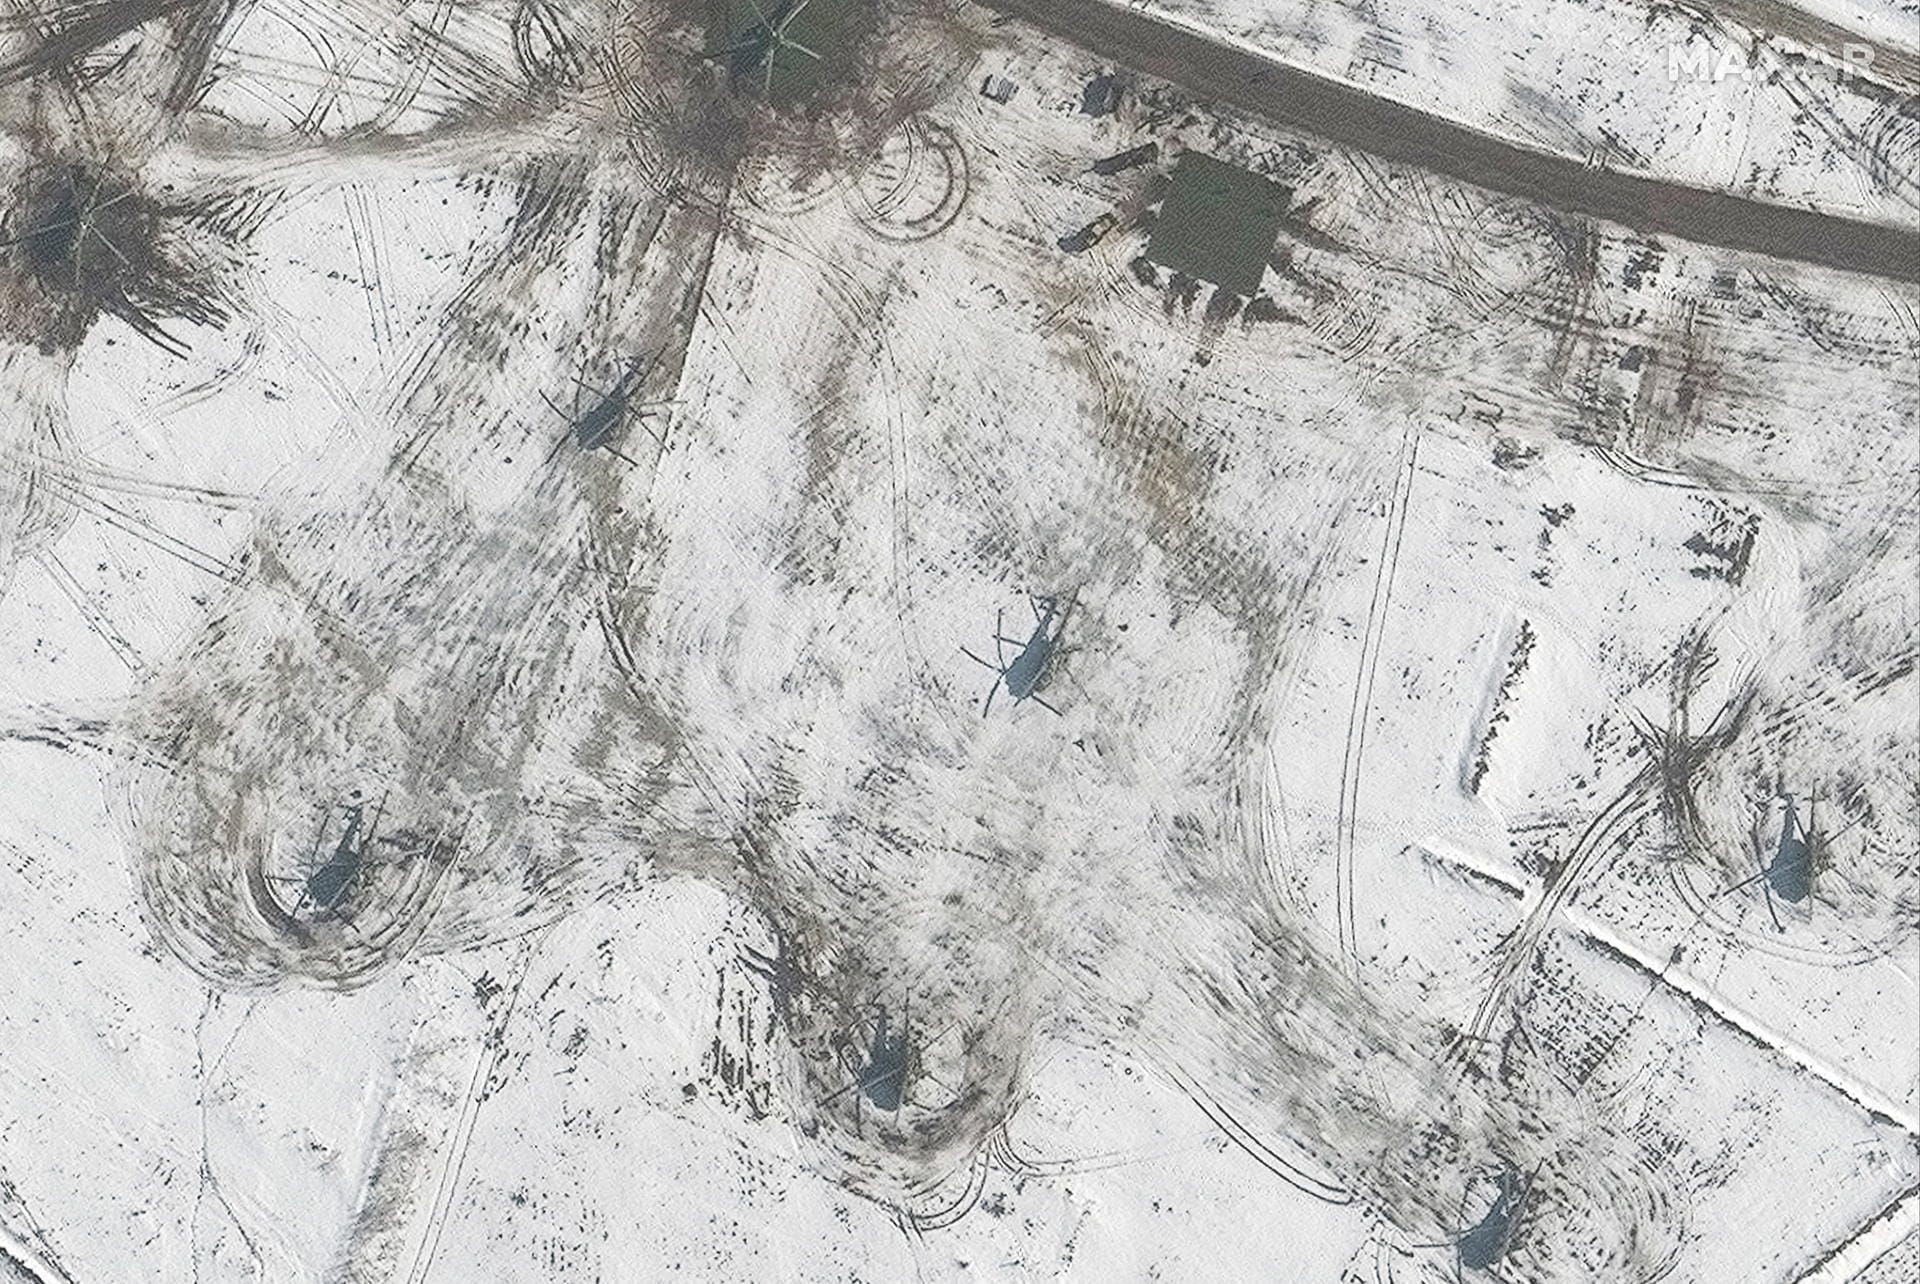 Eine nähere Aufnahme der russischen Helikopter, die auf einem Feld nahe Waluiki stationiert worden sind – etwa 15 Kilometer von der Grenze entfernt.